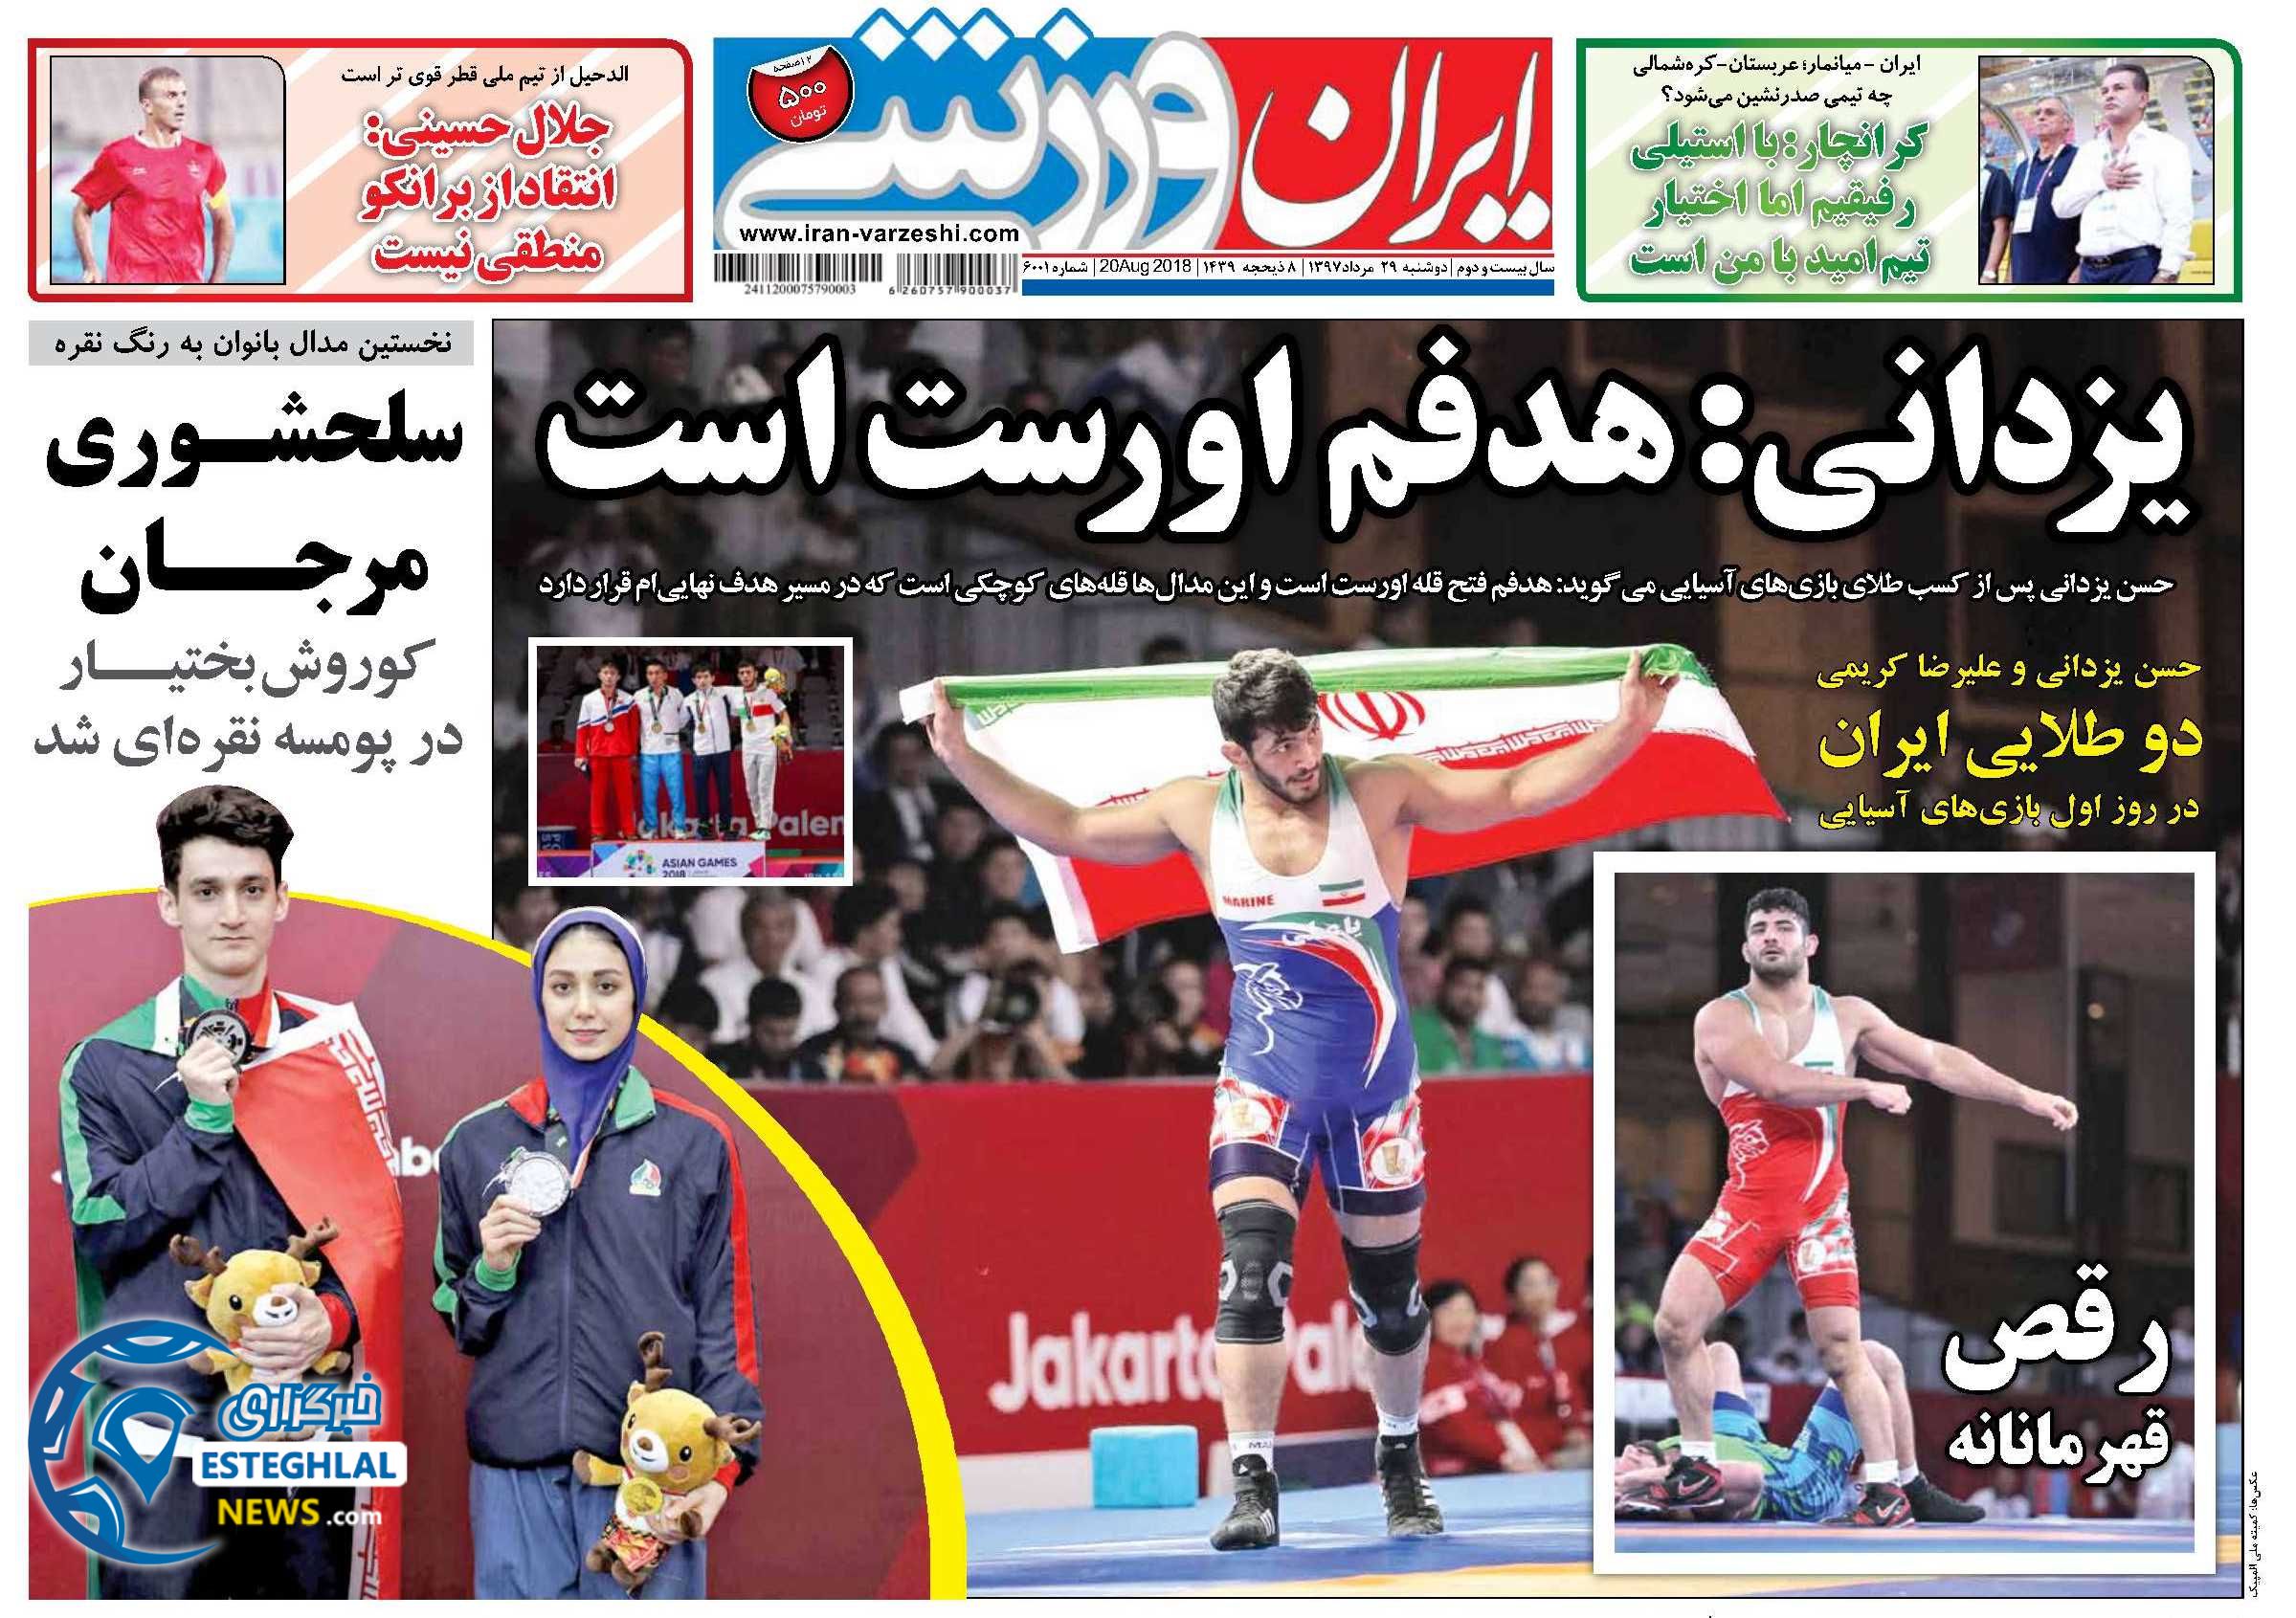 روزنامه ایران ورزشی دوشنبه 29 مرداد 1397  